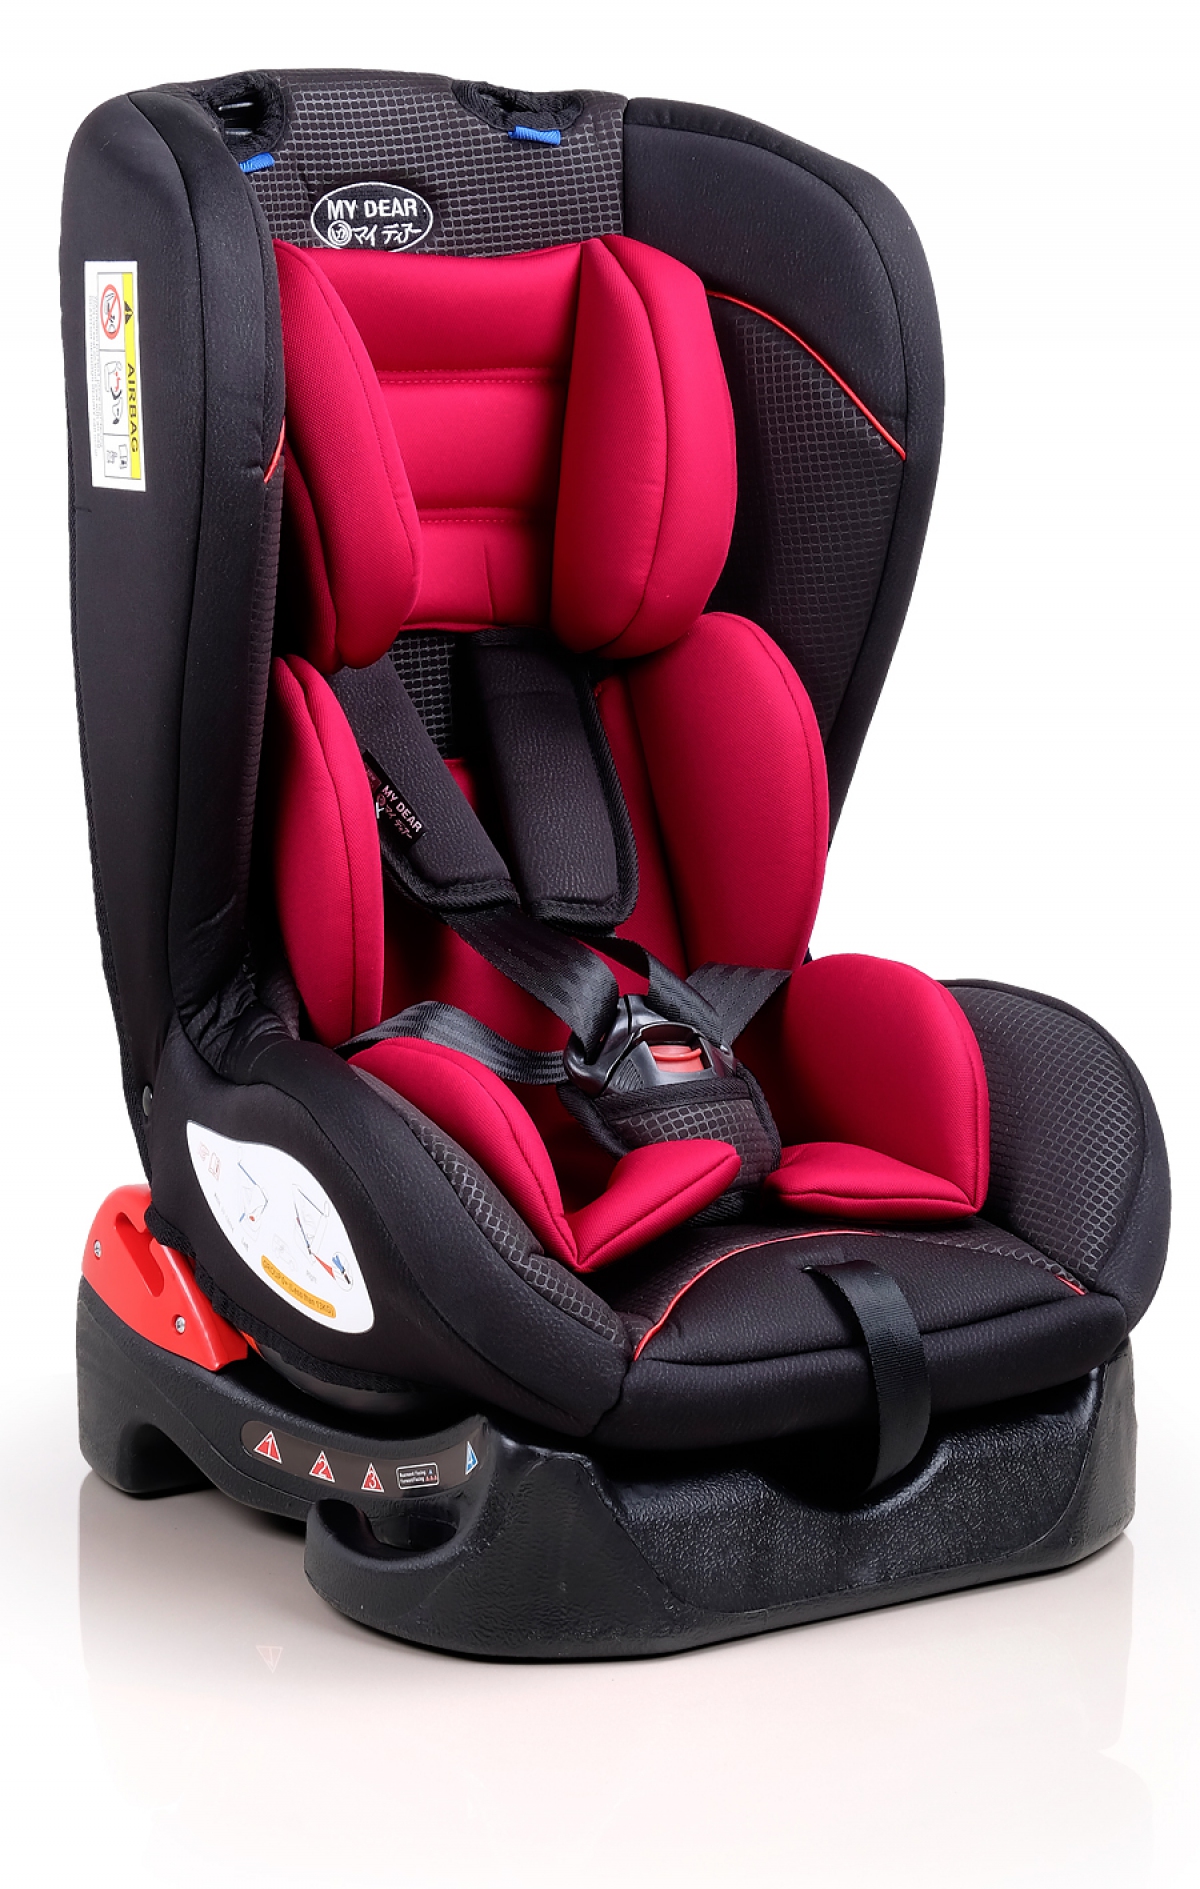 30013 Safety Car Seat - Baby Car Seat